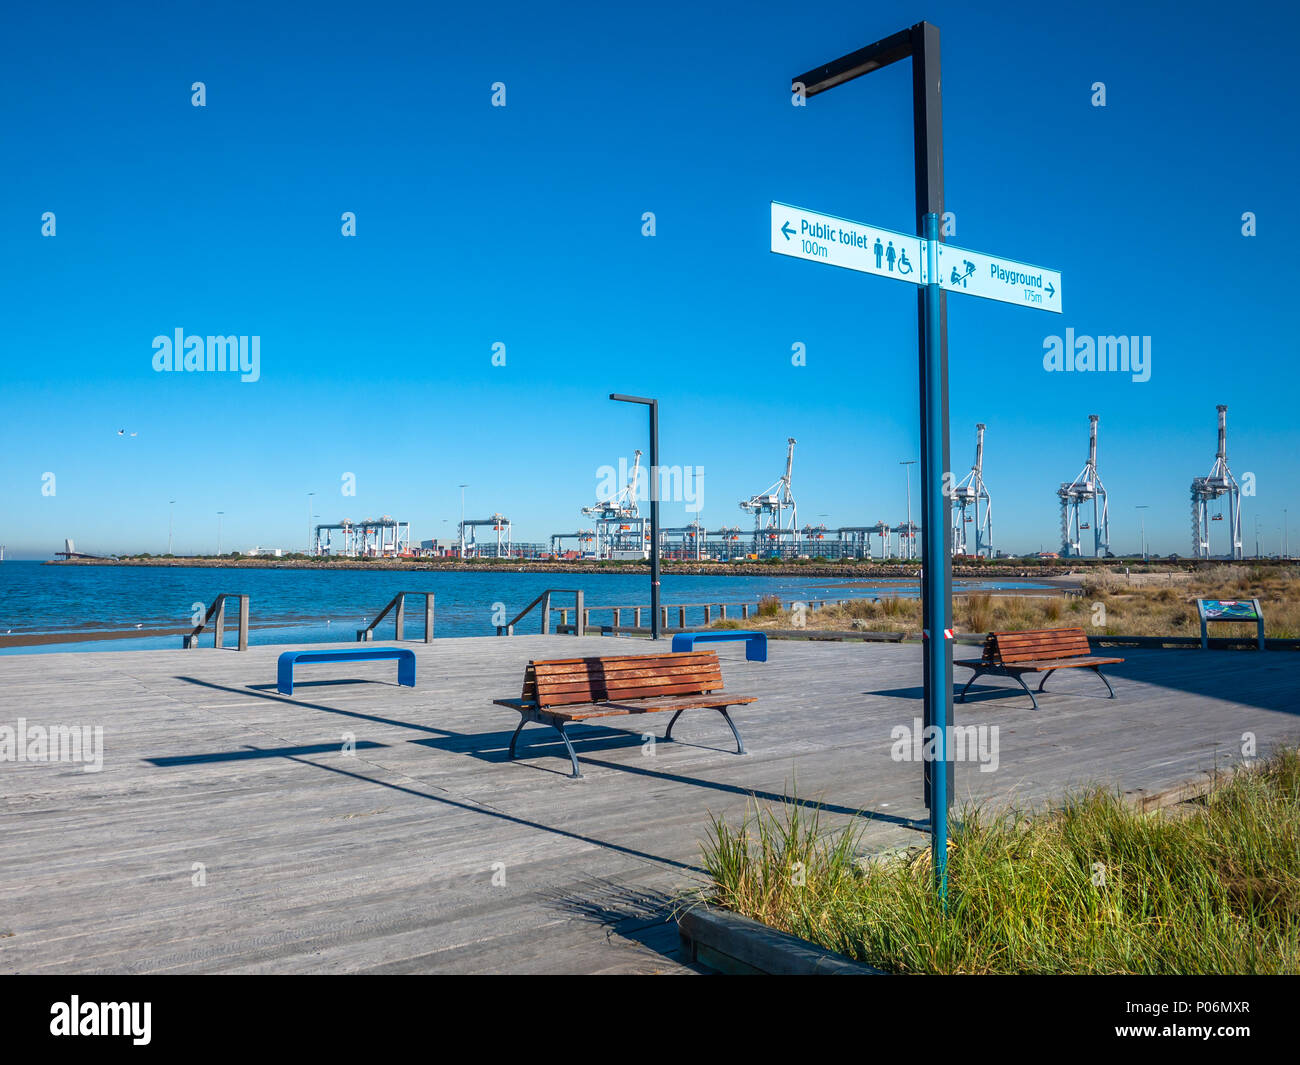 Boardwalk in der maritimen Cove Community Park in Port Melbourne, VIC, Australien. Schönen Park mit Blick auf das blaue Meer und den Hafen. Stockfoto